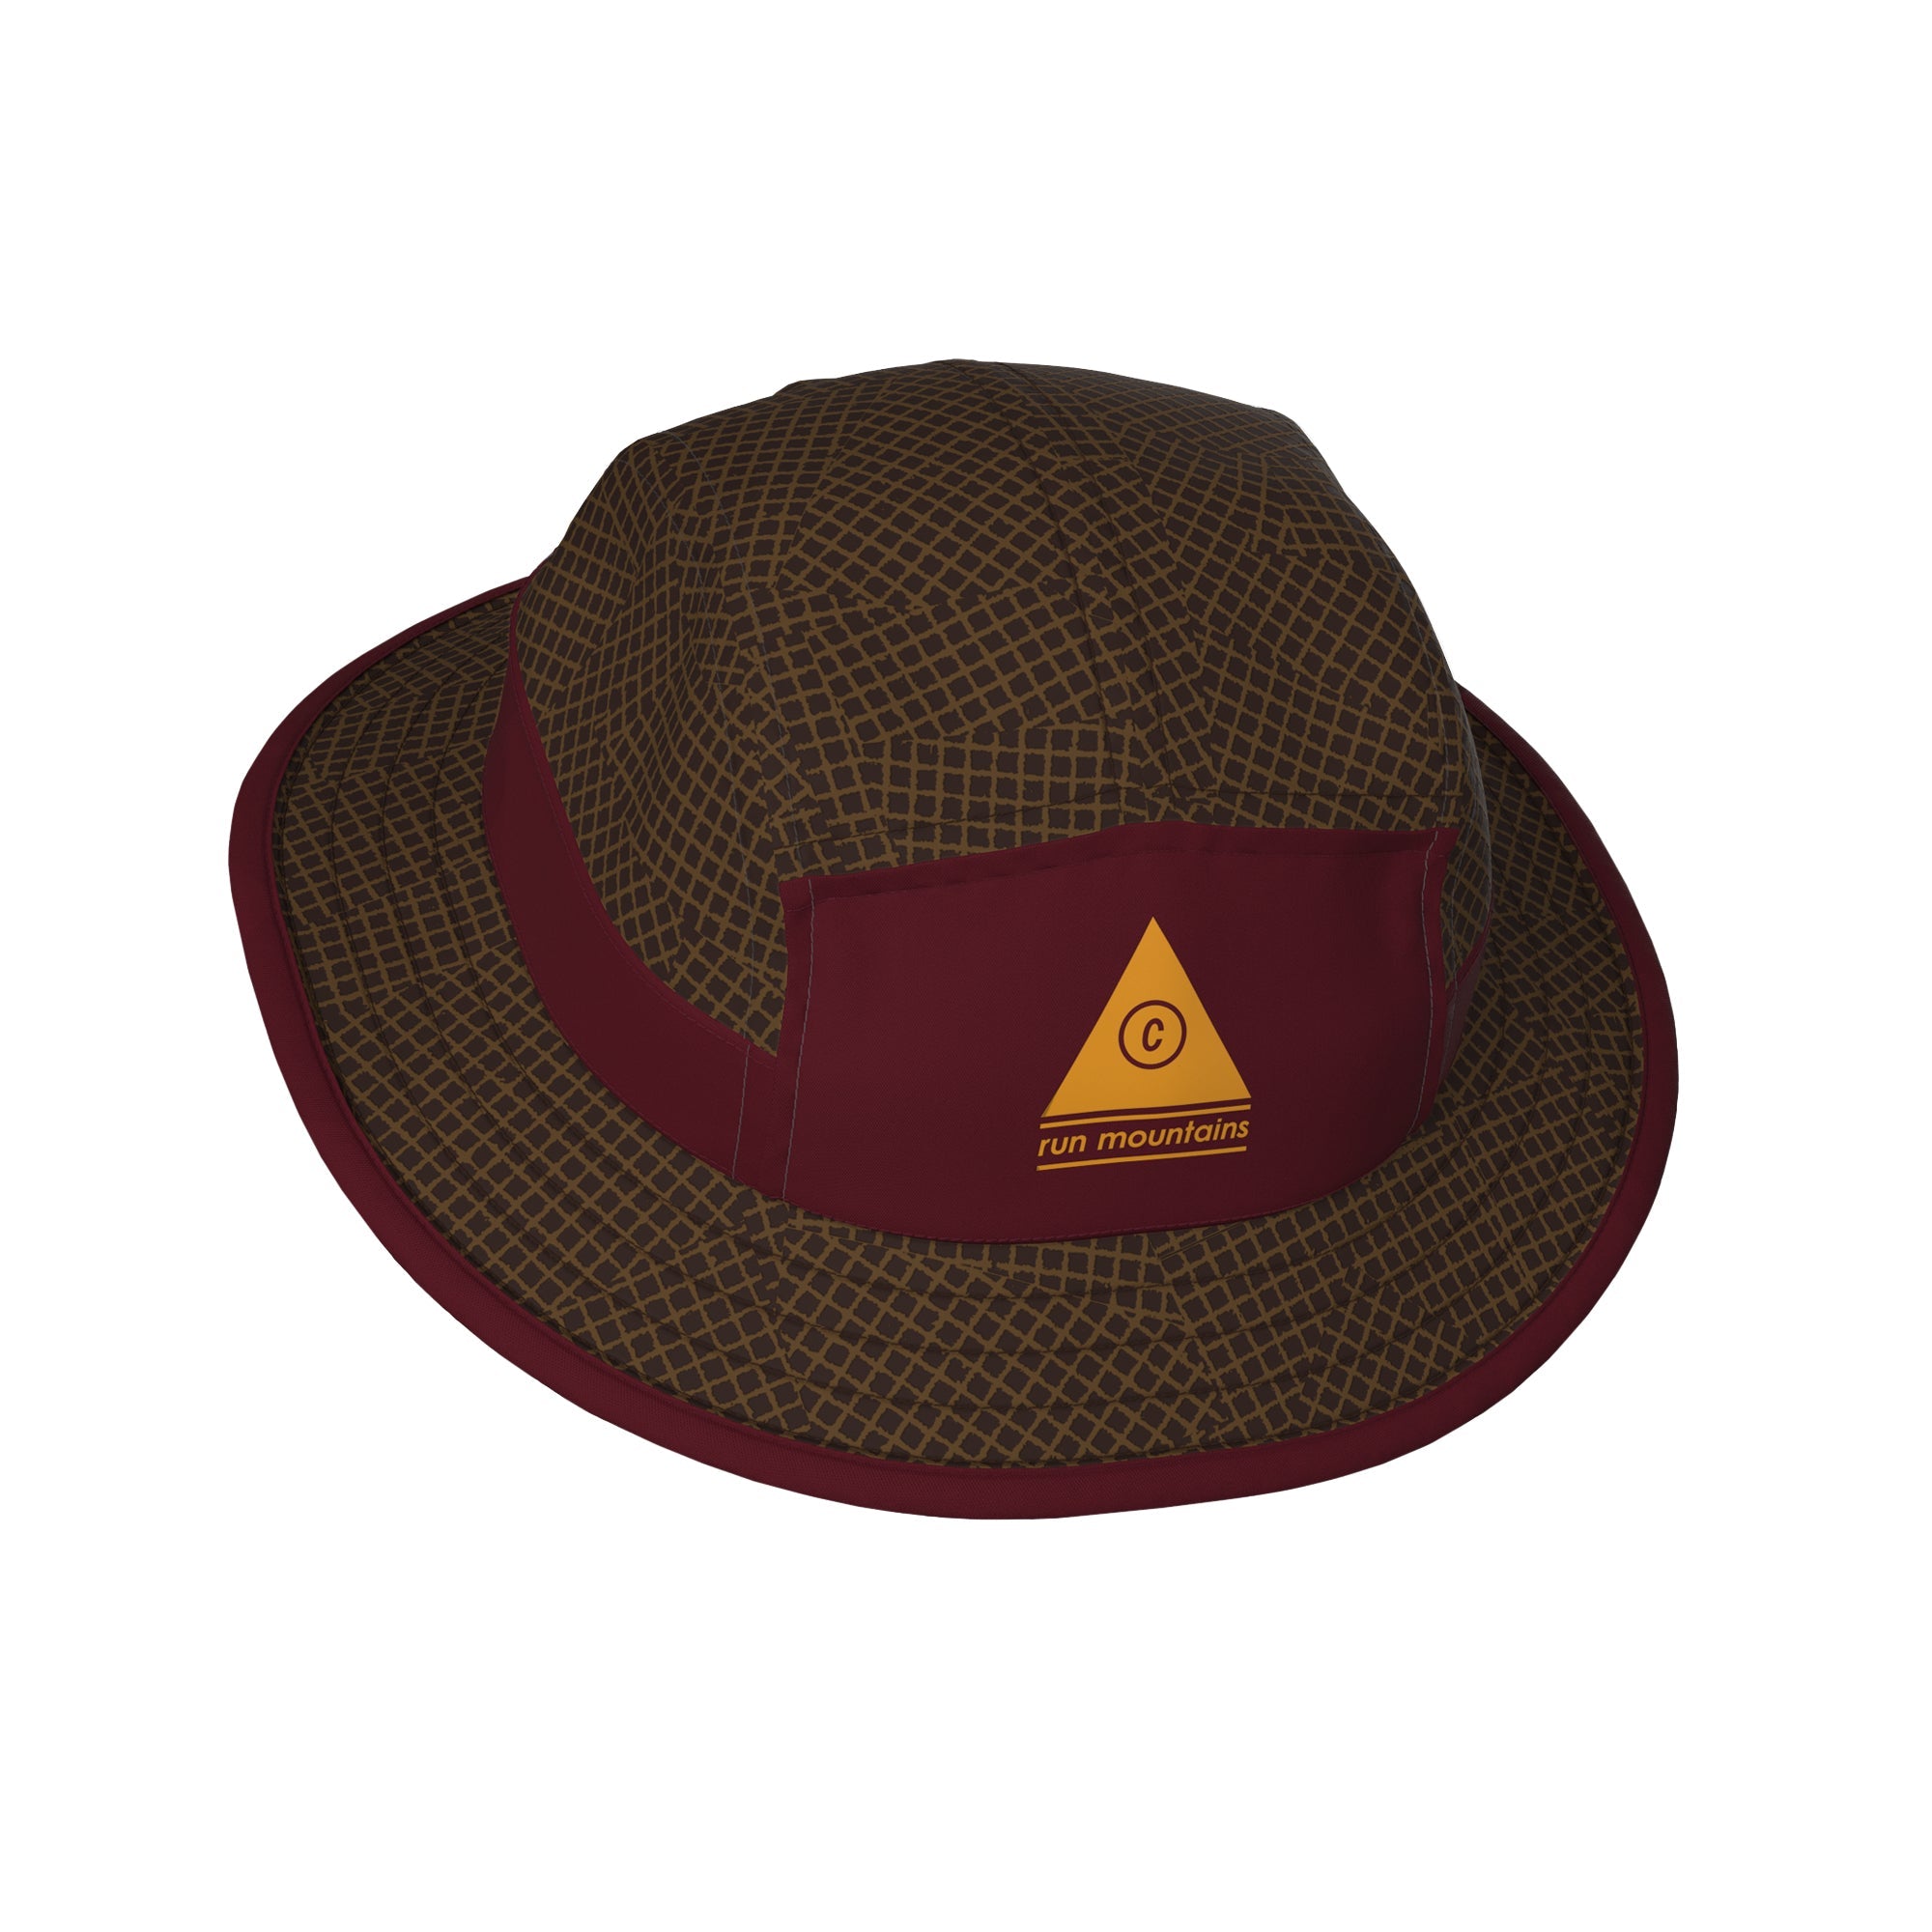 Ciele BKTHat - All Over Print - Run Mountains - Jaspen Matrix GEAR - Unisex Hats, Visors & Headwear 